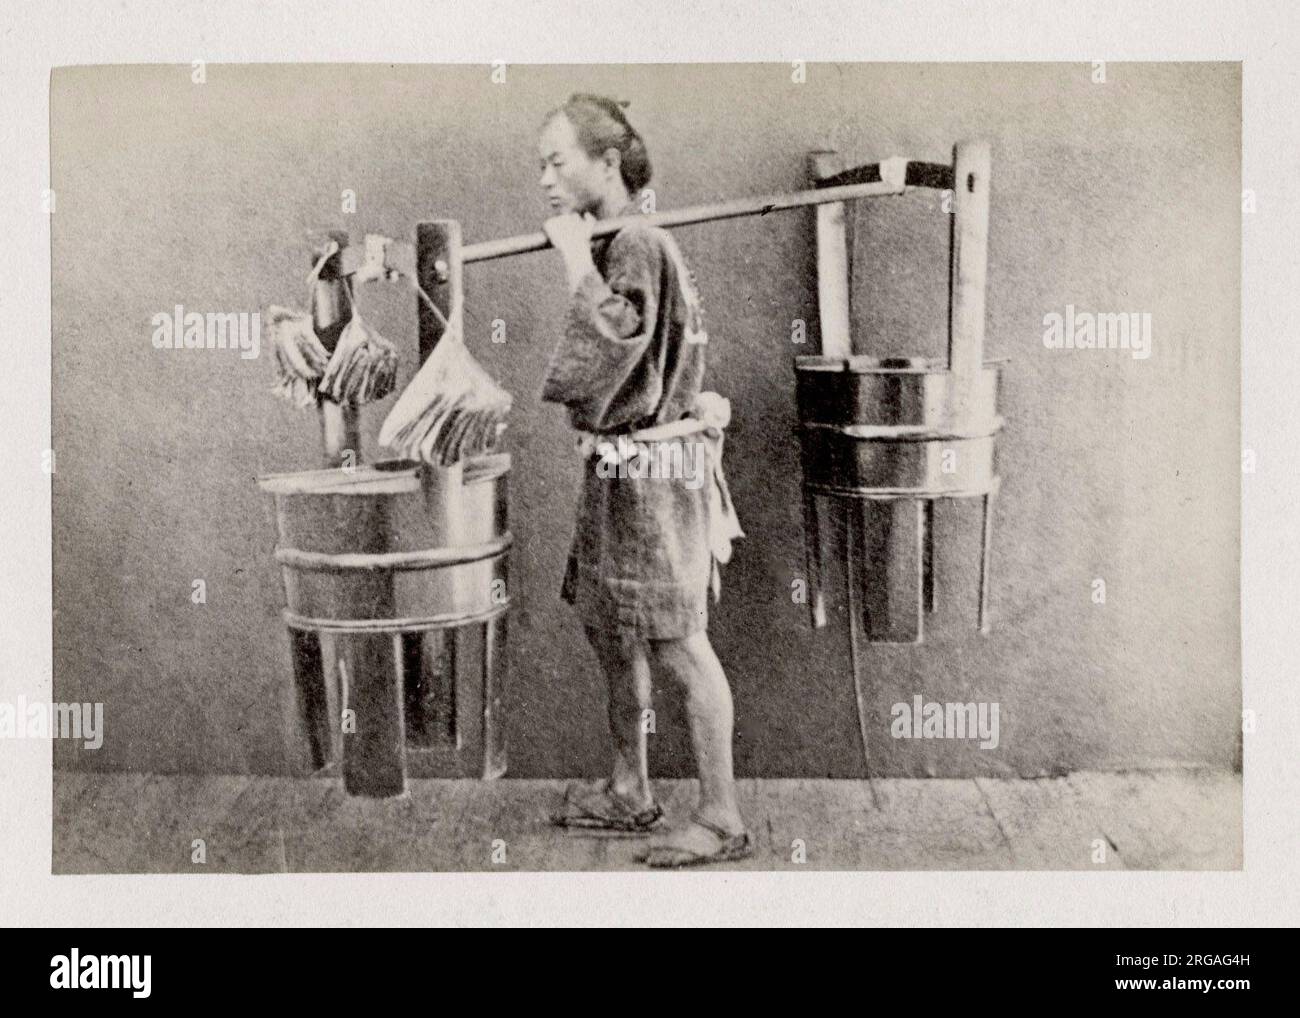 Fotografia d'epoca del XIX secolo - ritratto fotografico di origini giapponesi, probabilmente opera del fotografo giapponese Shimooka Renjo - portatore o venditore che trasporta un carico. Foto Stock